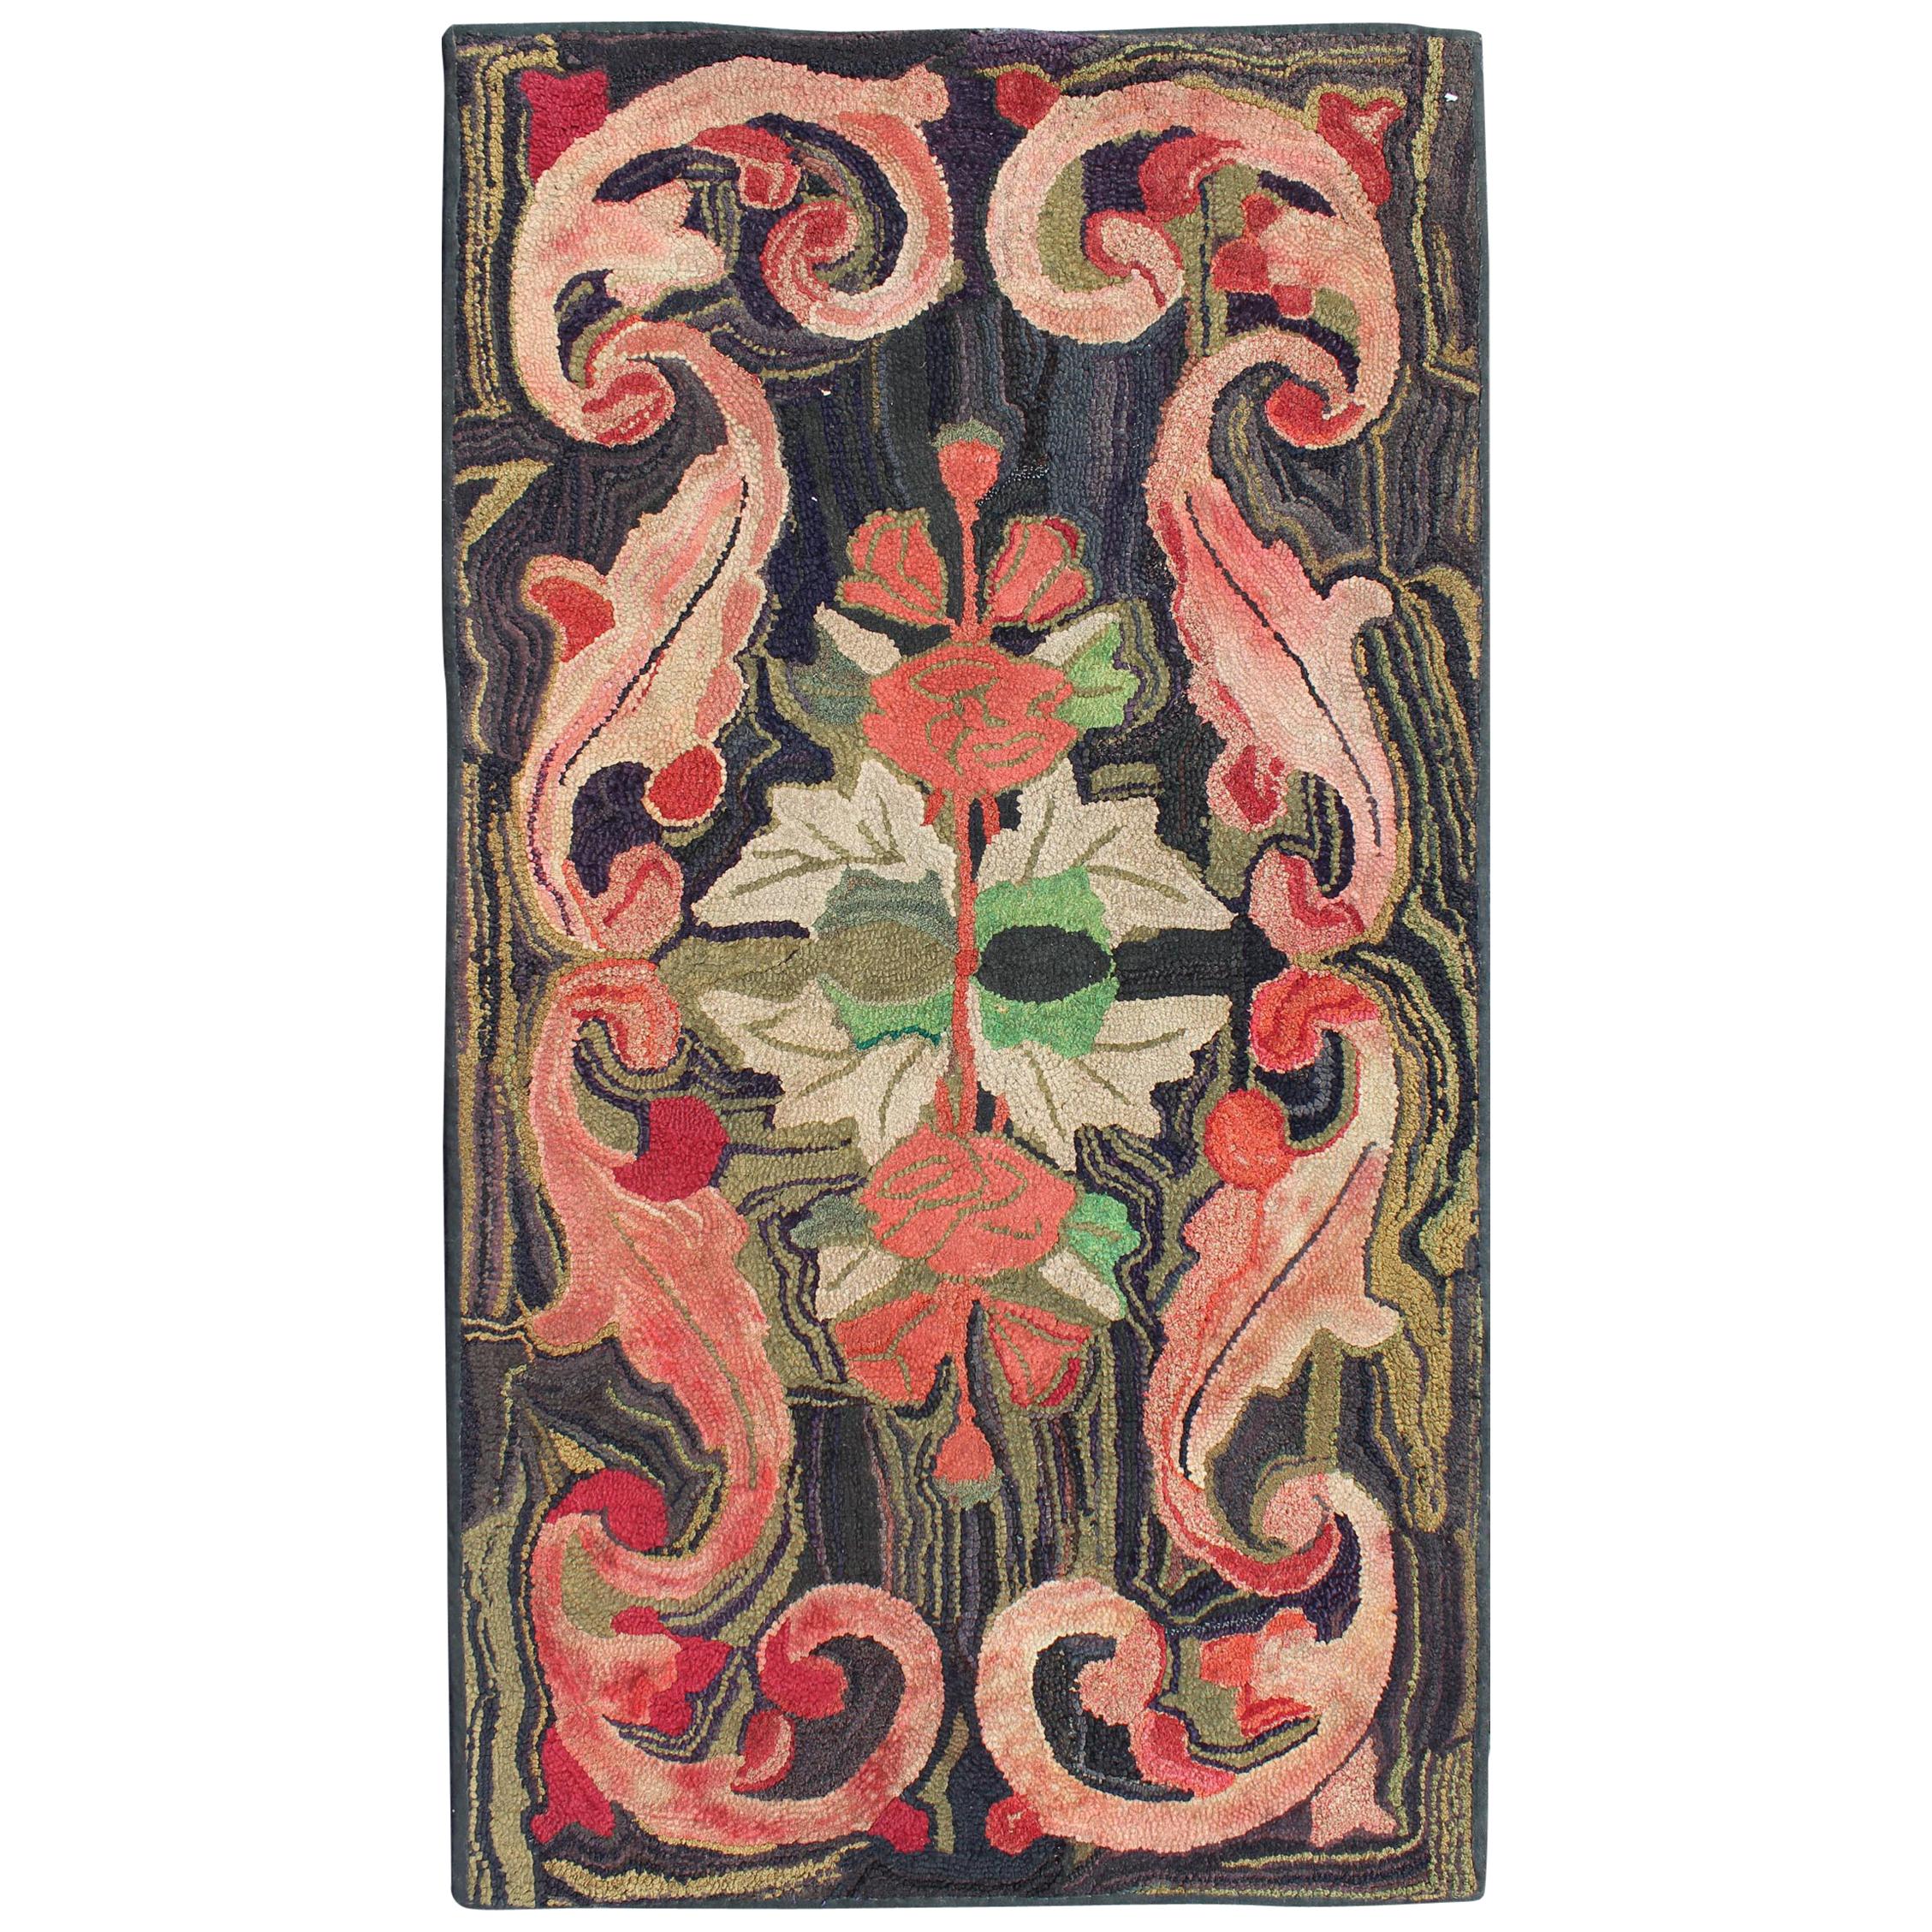 Antiker amerikanischer Anthrazitfarbener, roter und grüner Hakenteppich mit großem Blumendesign